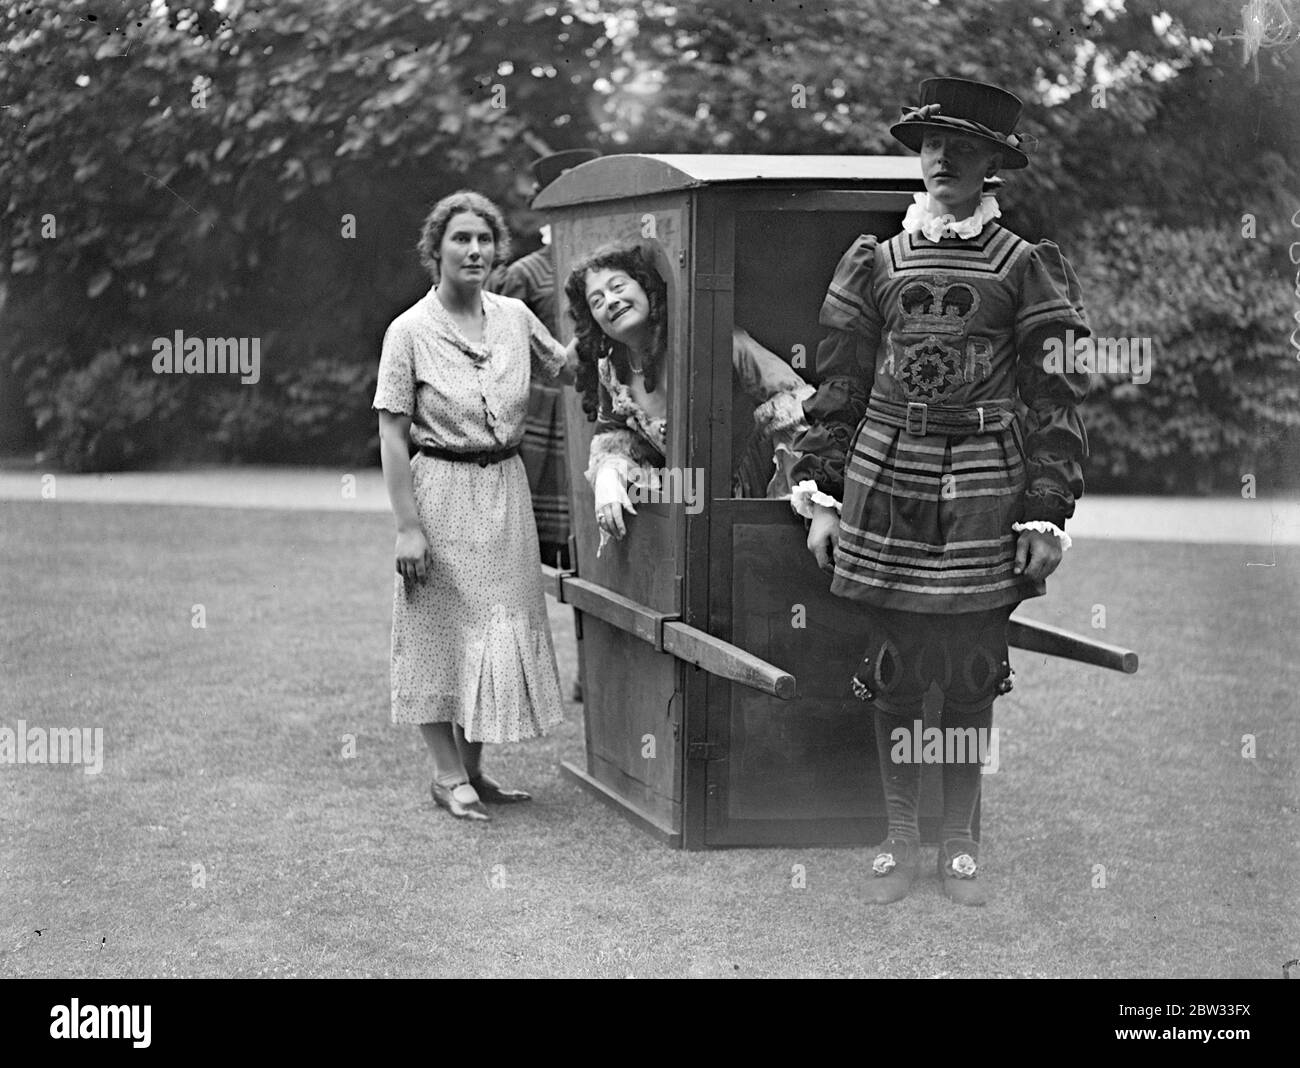 La société répète pour le divertissement dans les jardins de No 10 Downing Street . Beaucoup de gens de la société ont pris part à une répétition de robe d'un divertissement de soirée tenu dans le domaine de la rue Downing n° 10 à l'aide des zones en difficulté dans le nord . Mlle Ishbel MacDonald discutant avec Lady Olga Montagu comme Reine Anne . 13 juillet 1932 Banque D'Images